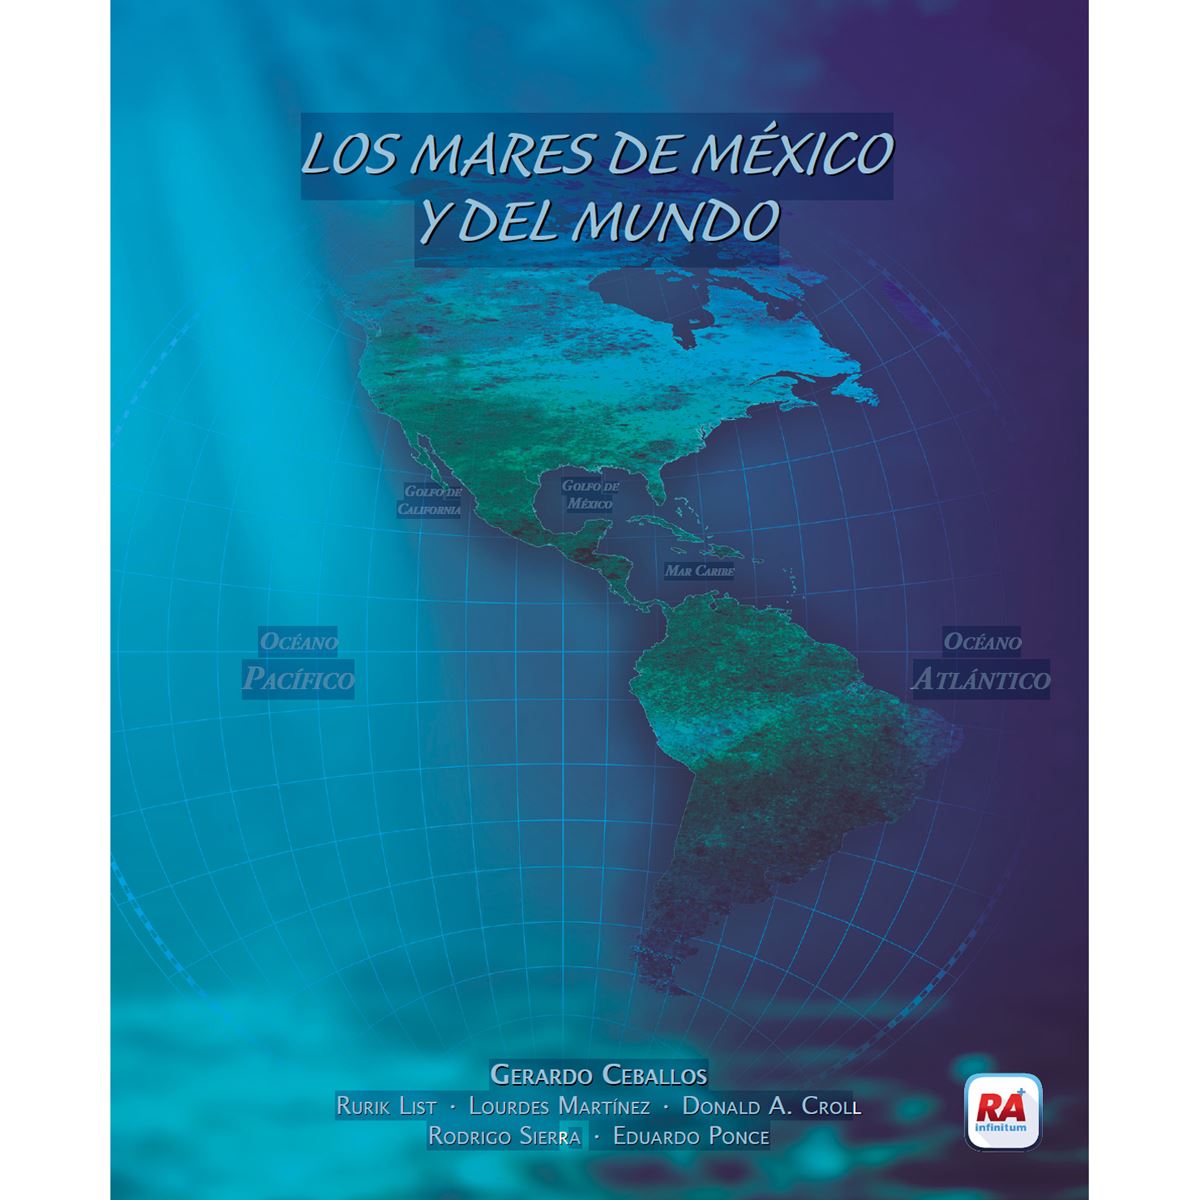 Los mares de Mexico y del mundo